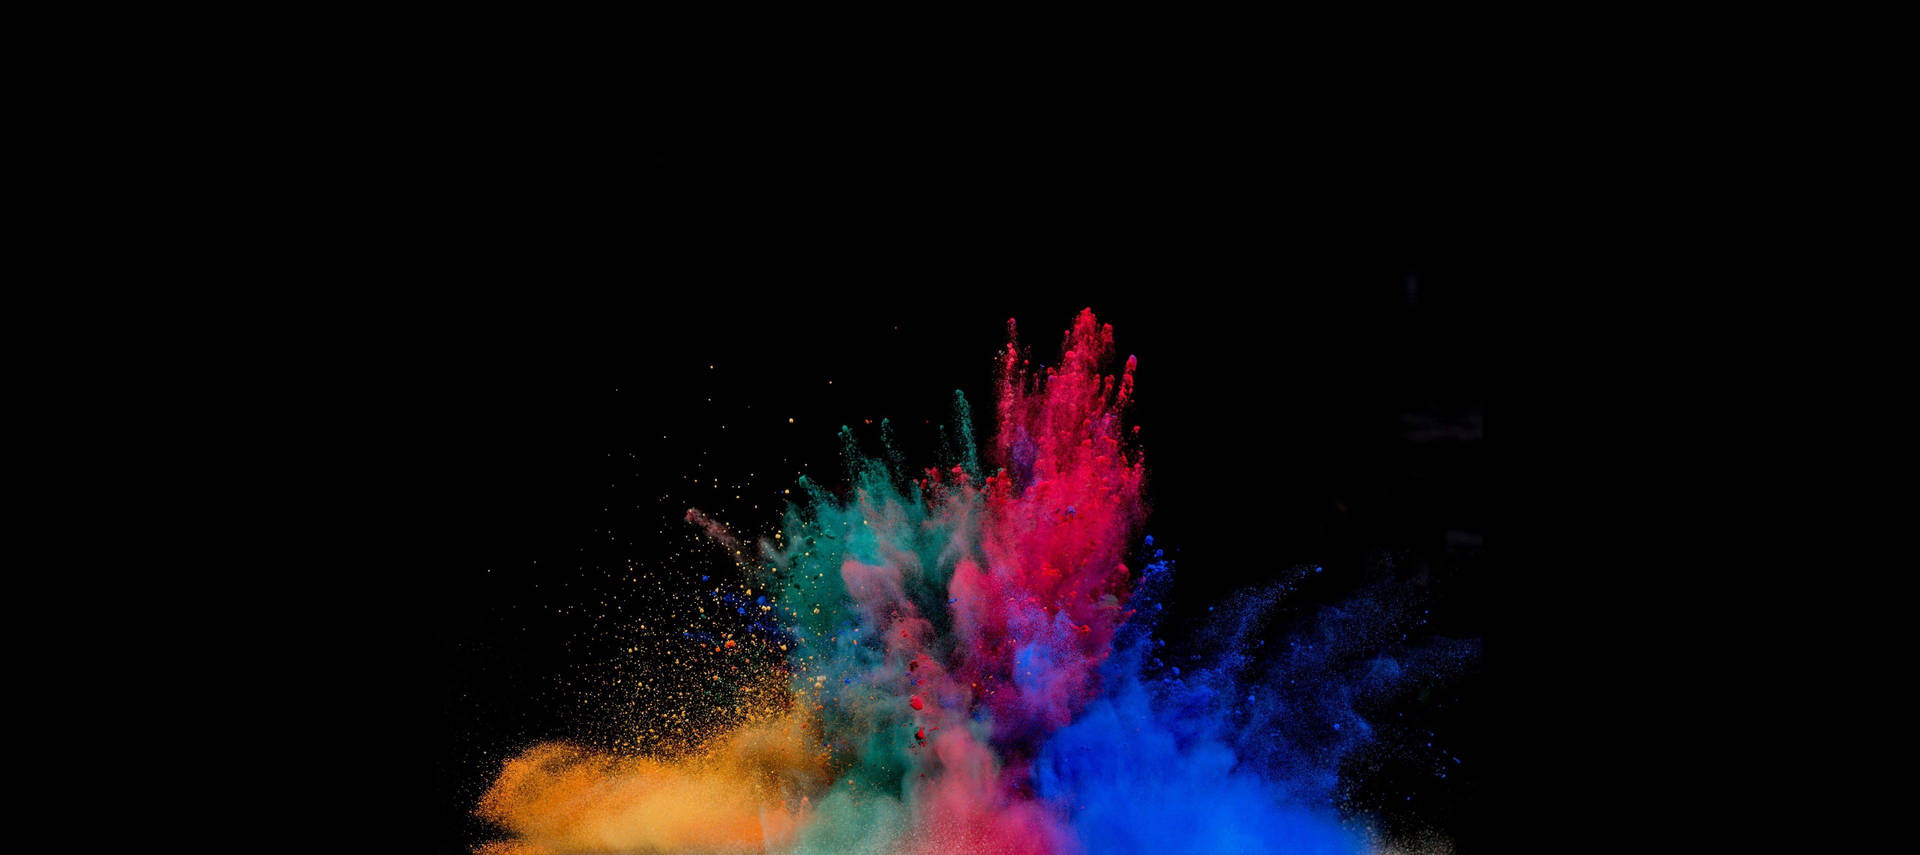 AMOLED Powder eksplosion: Verdens smukkeste udsprøjtning af de farvestrålende, magiske AMOLED-støv! Wallpaper